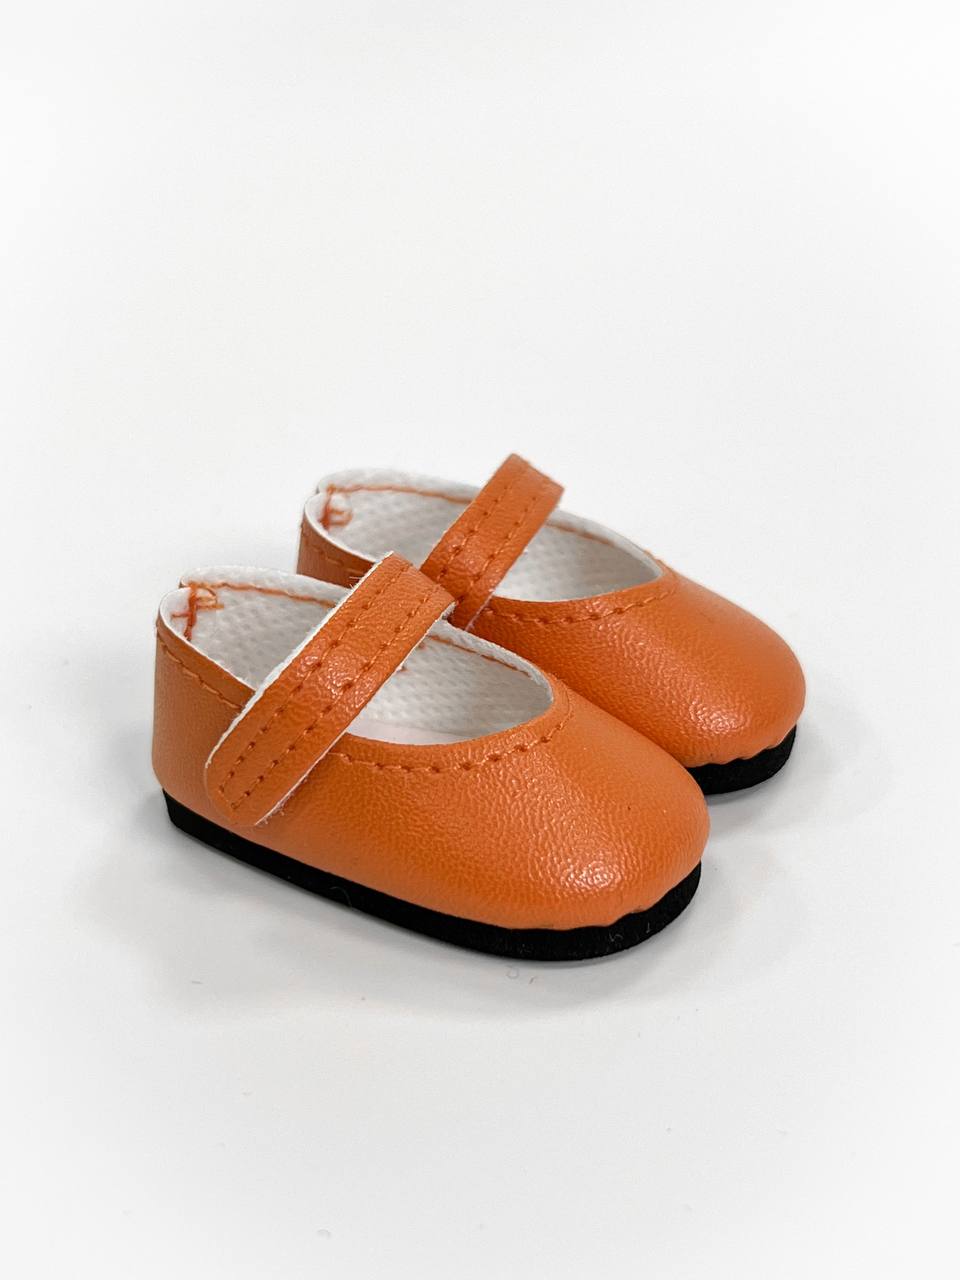 Paola Reina Туфли оранжевые, для кукол 32 см, арт. 63229